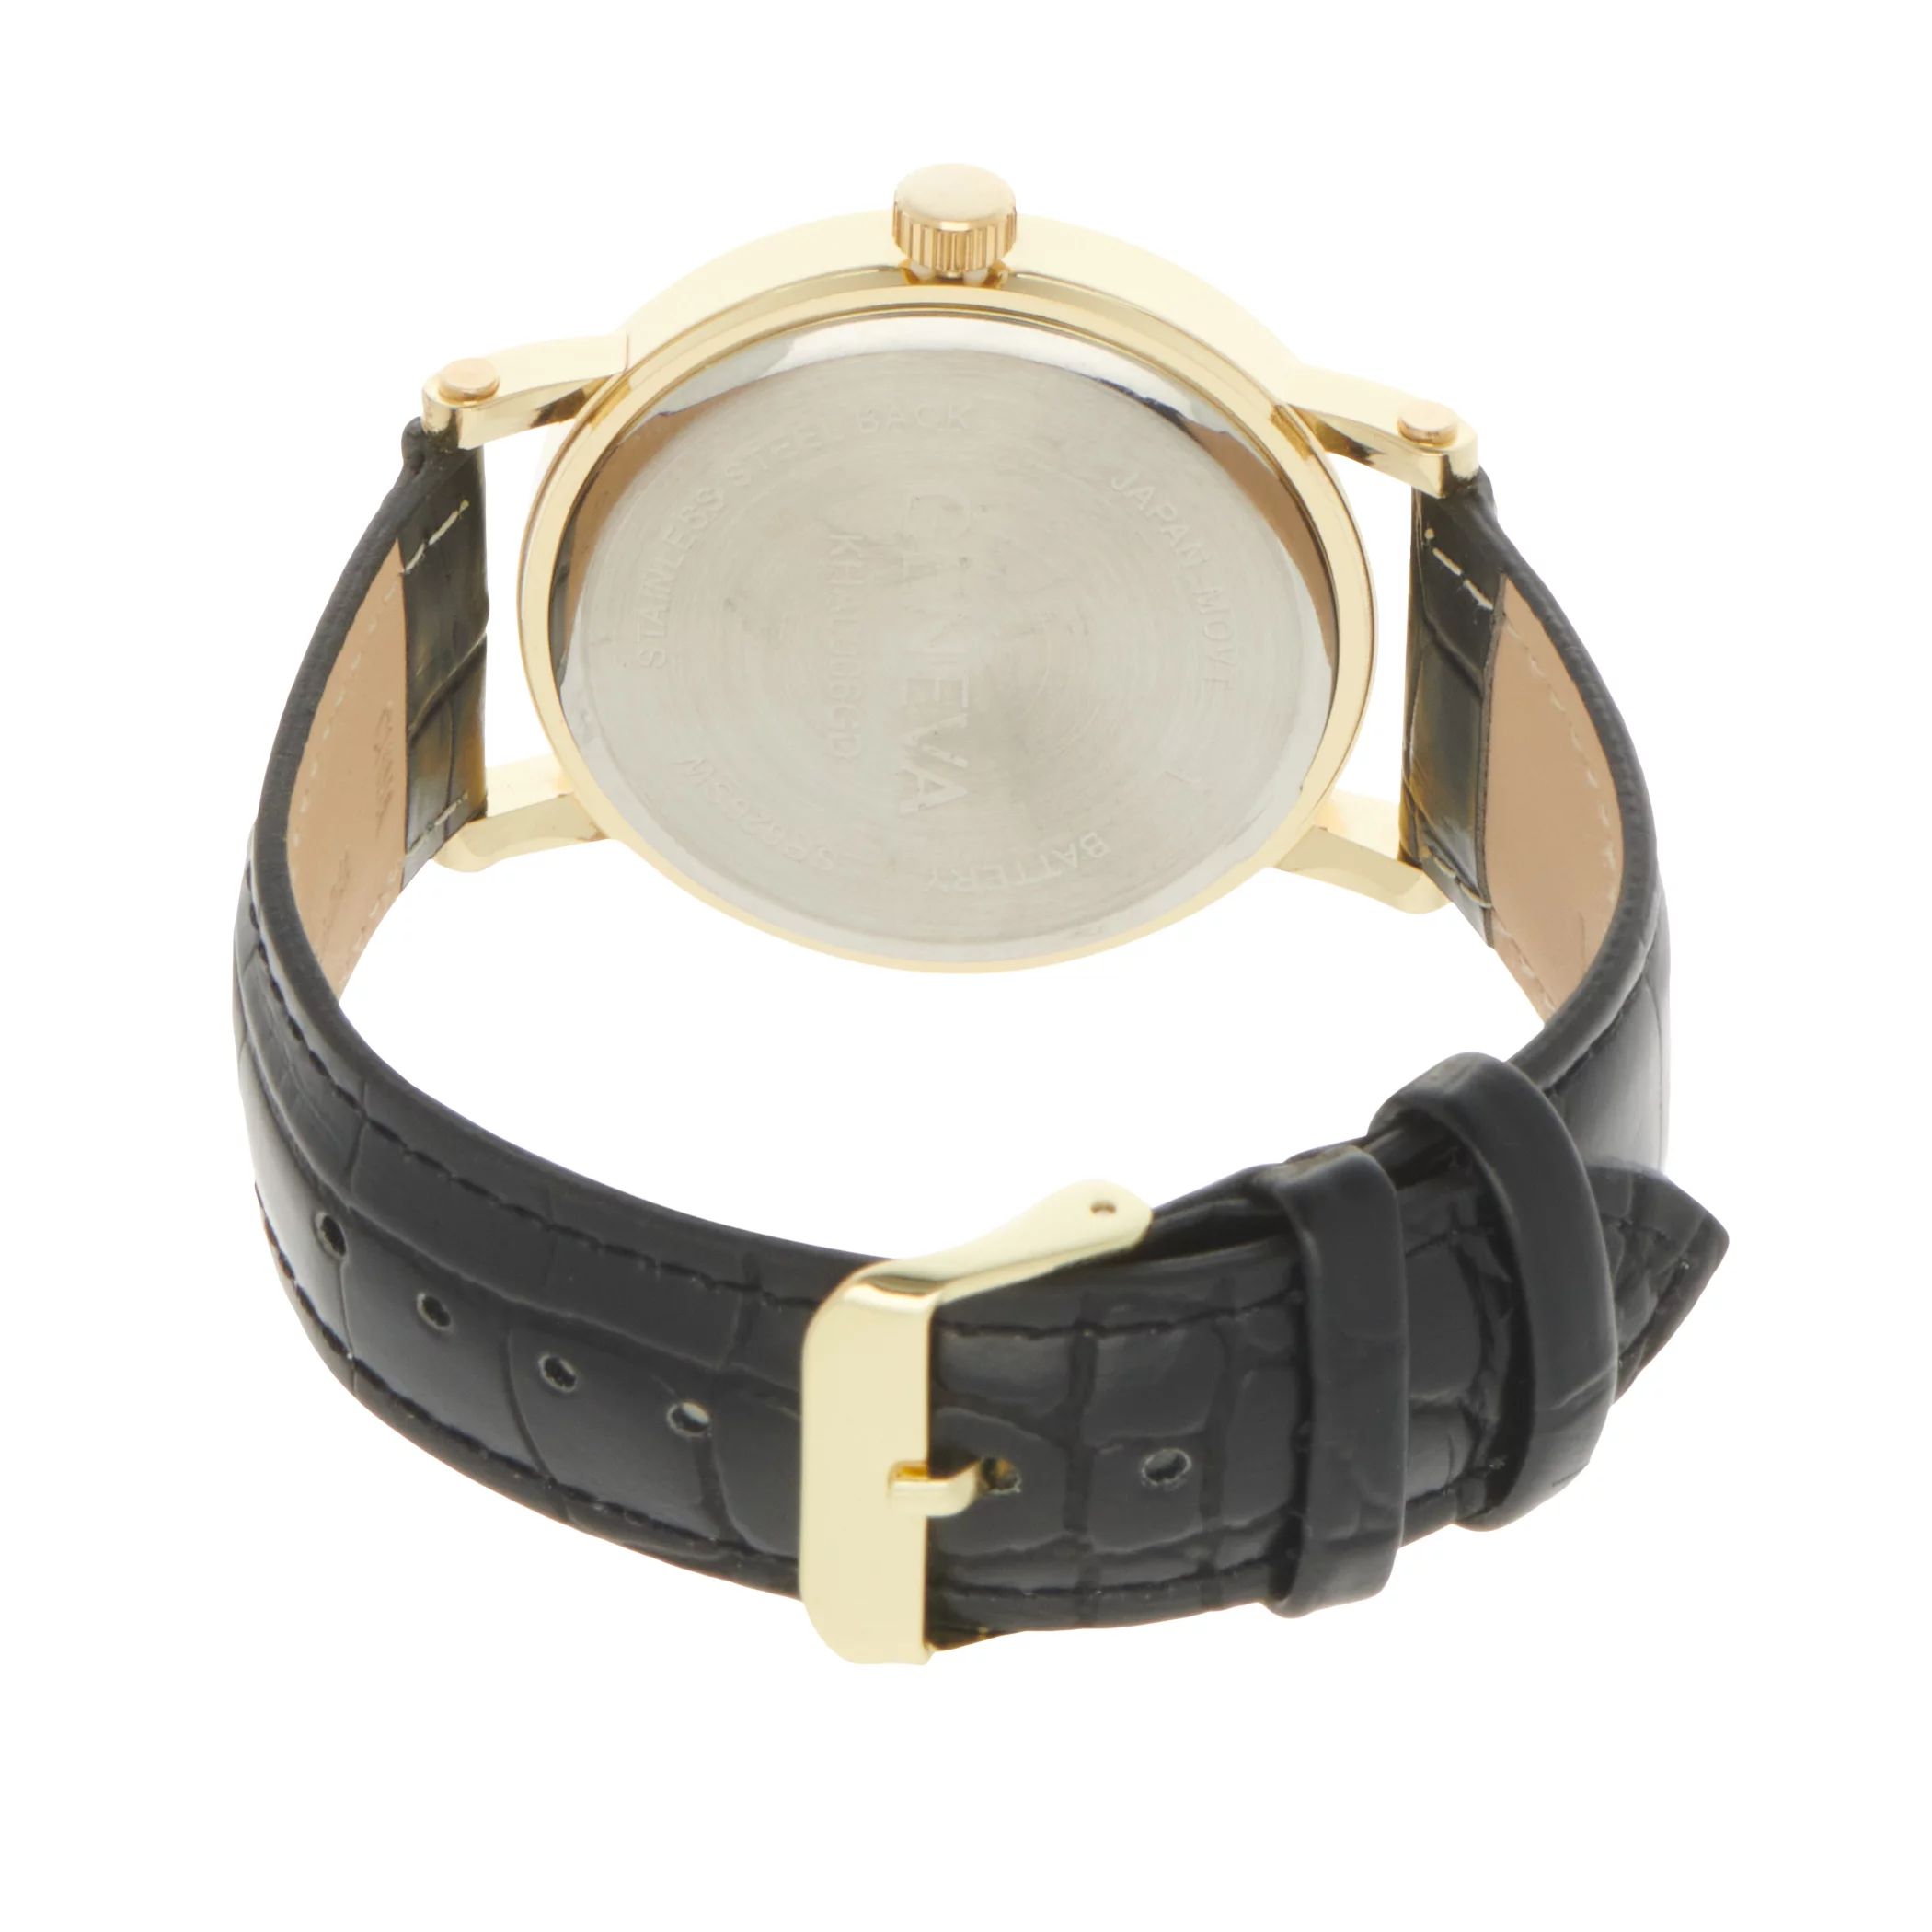 Мужские часы с золотистым ремешком Diamond Accent - KHA0006GD Geneva geneva 1 10 000